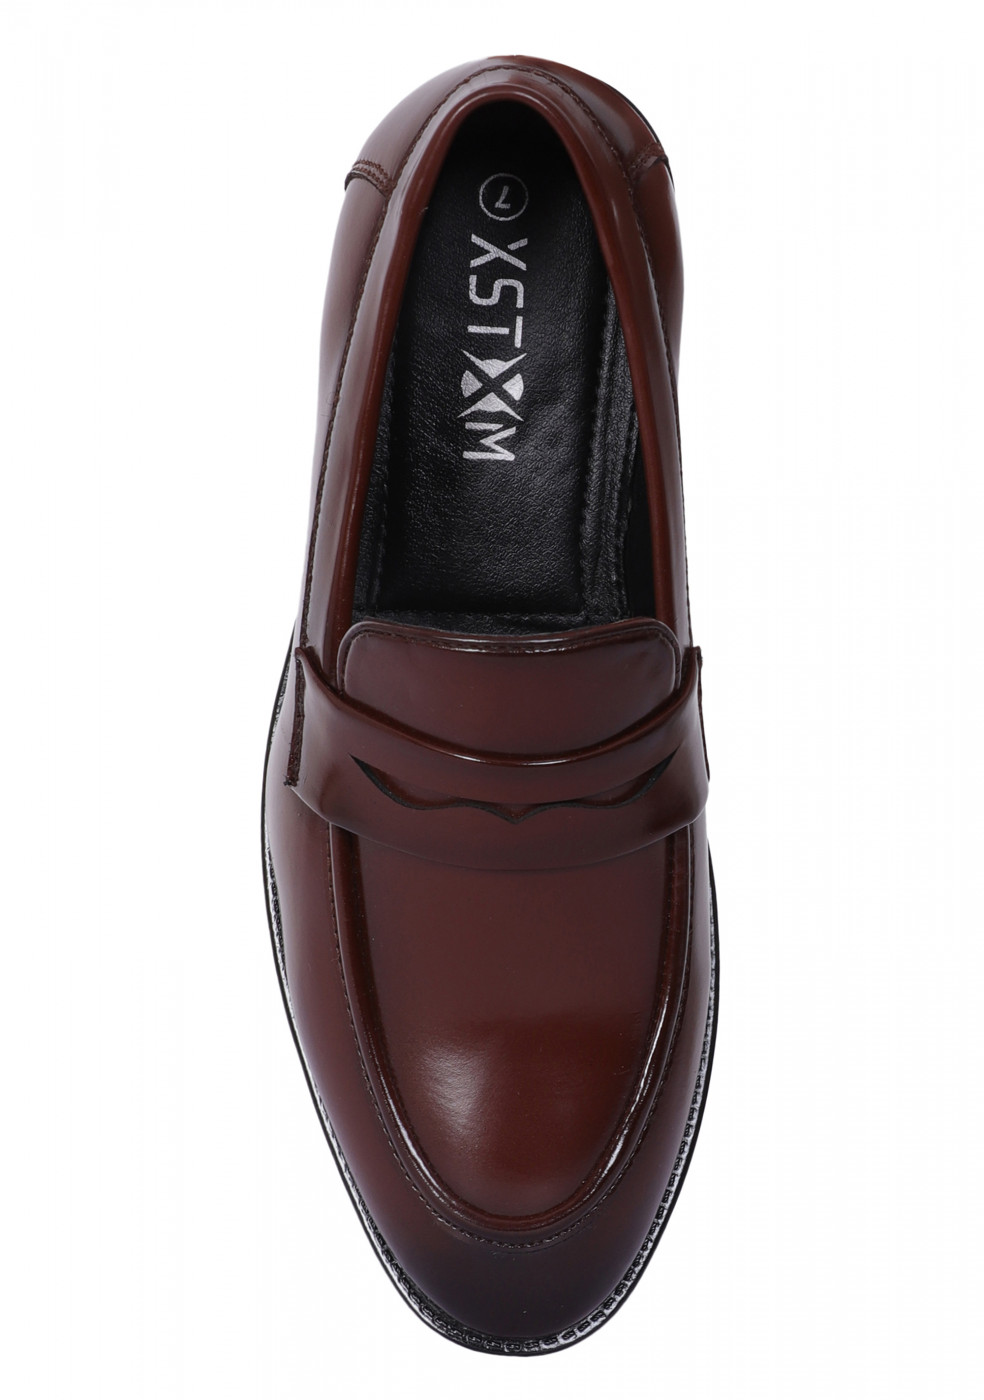 XSTOM Formal Brown Color Shoes For Men